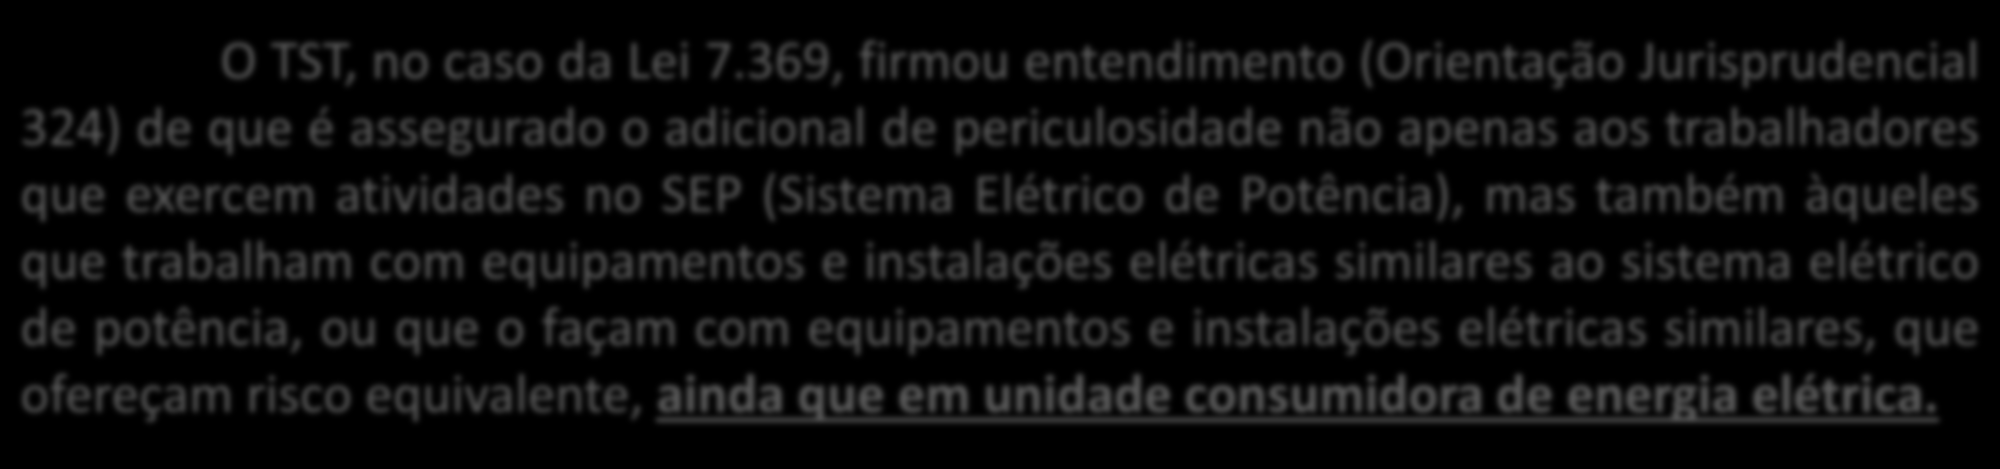 Atividades com ENERGIA ELÉTRICA O TST, no caso da Lei 7.